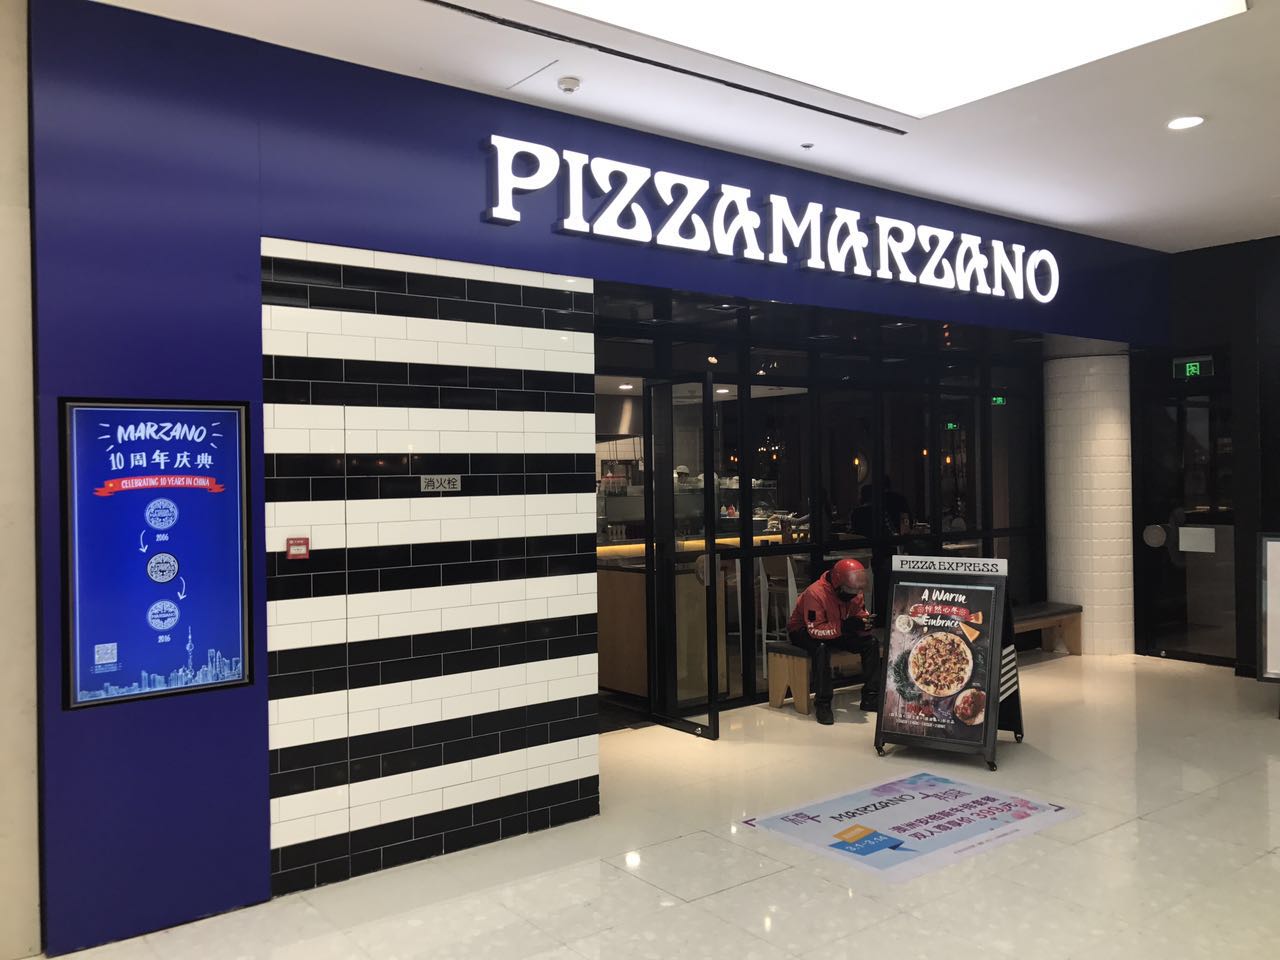 PizzaMarzano门店